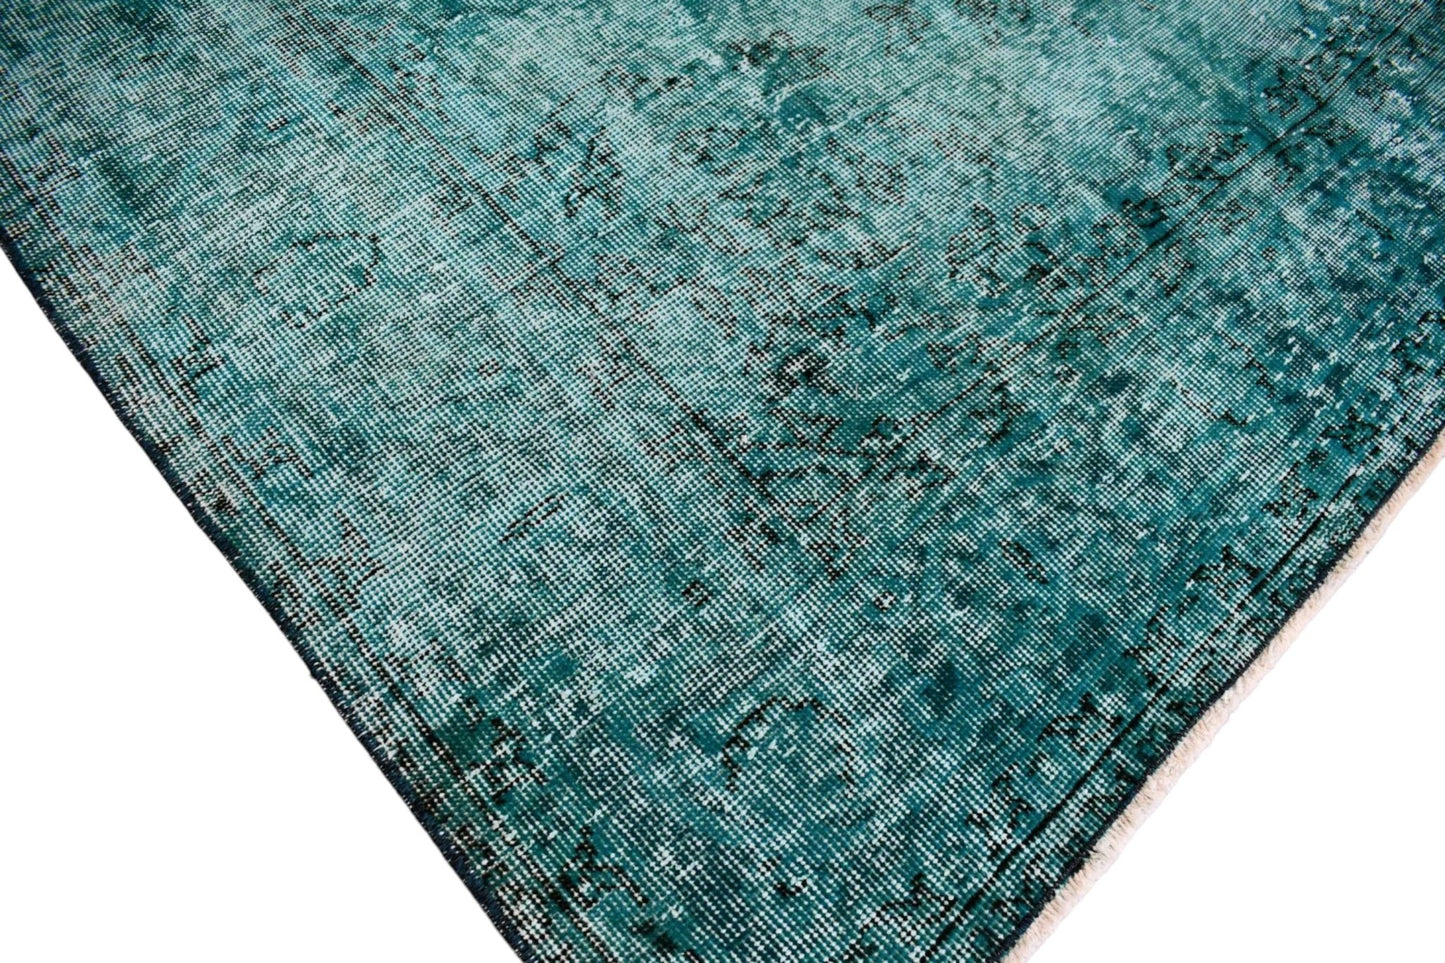 Turquoise vintage vloerkleed - E198 - Lavinta